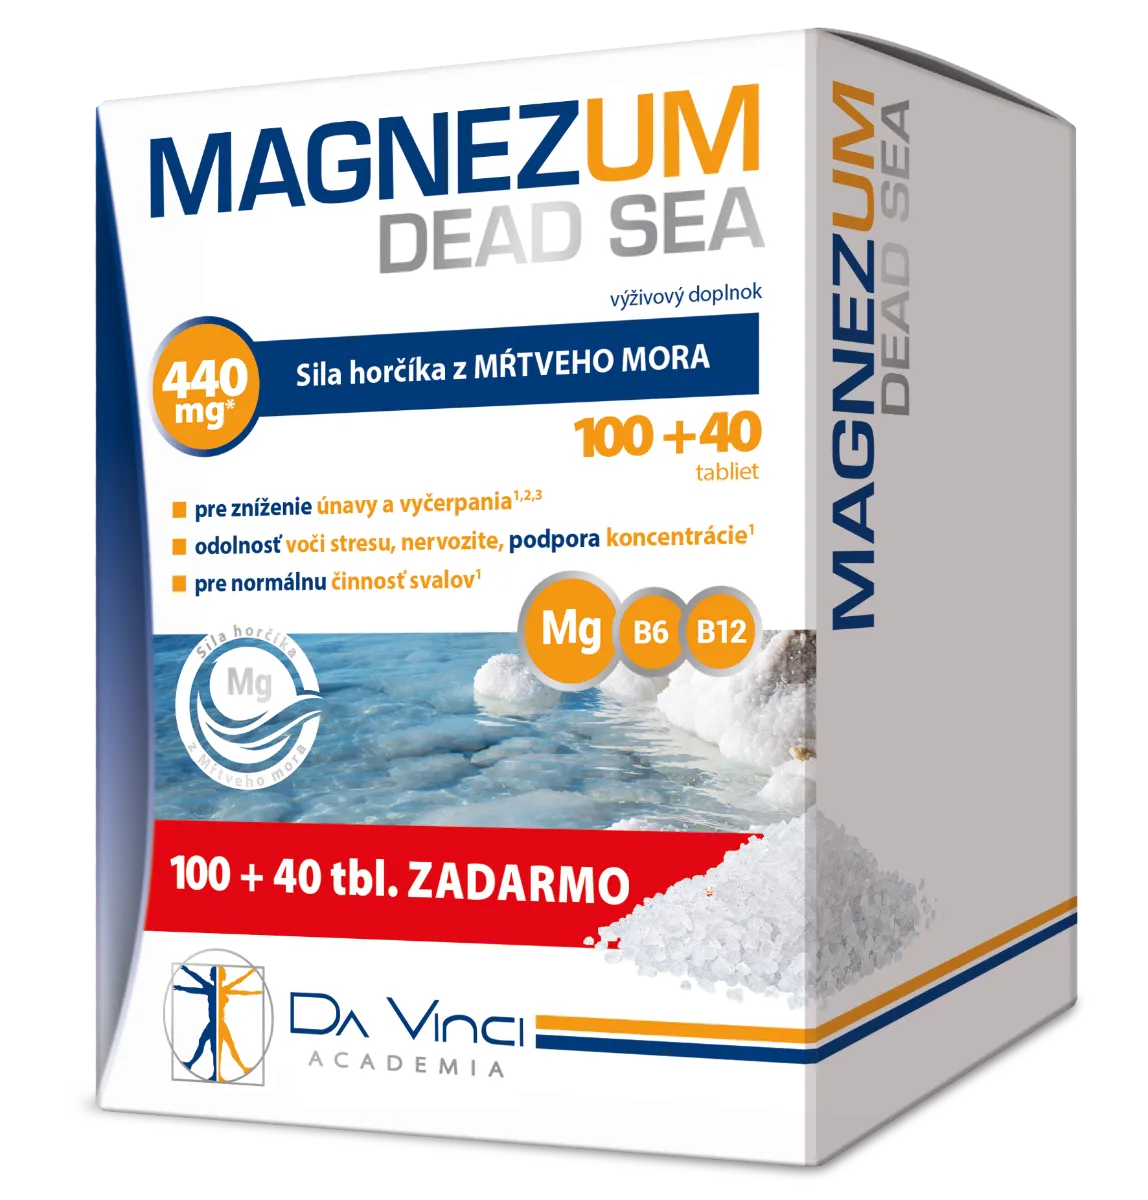 Magnezum Dead Sea - DA VINCI 100+40 tbl. zadarmo